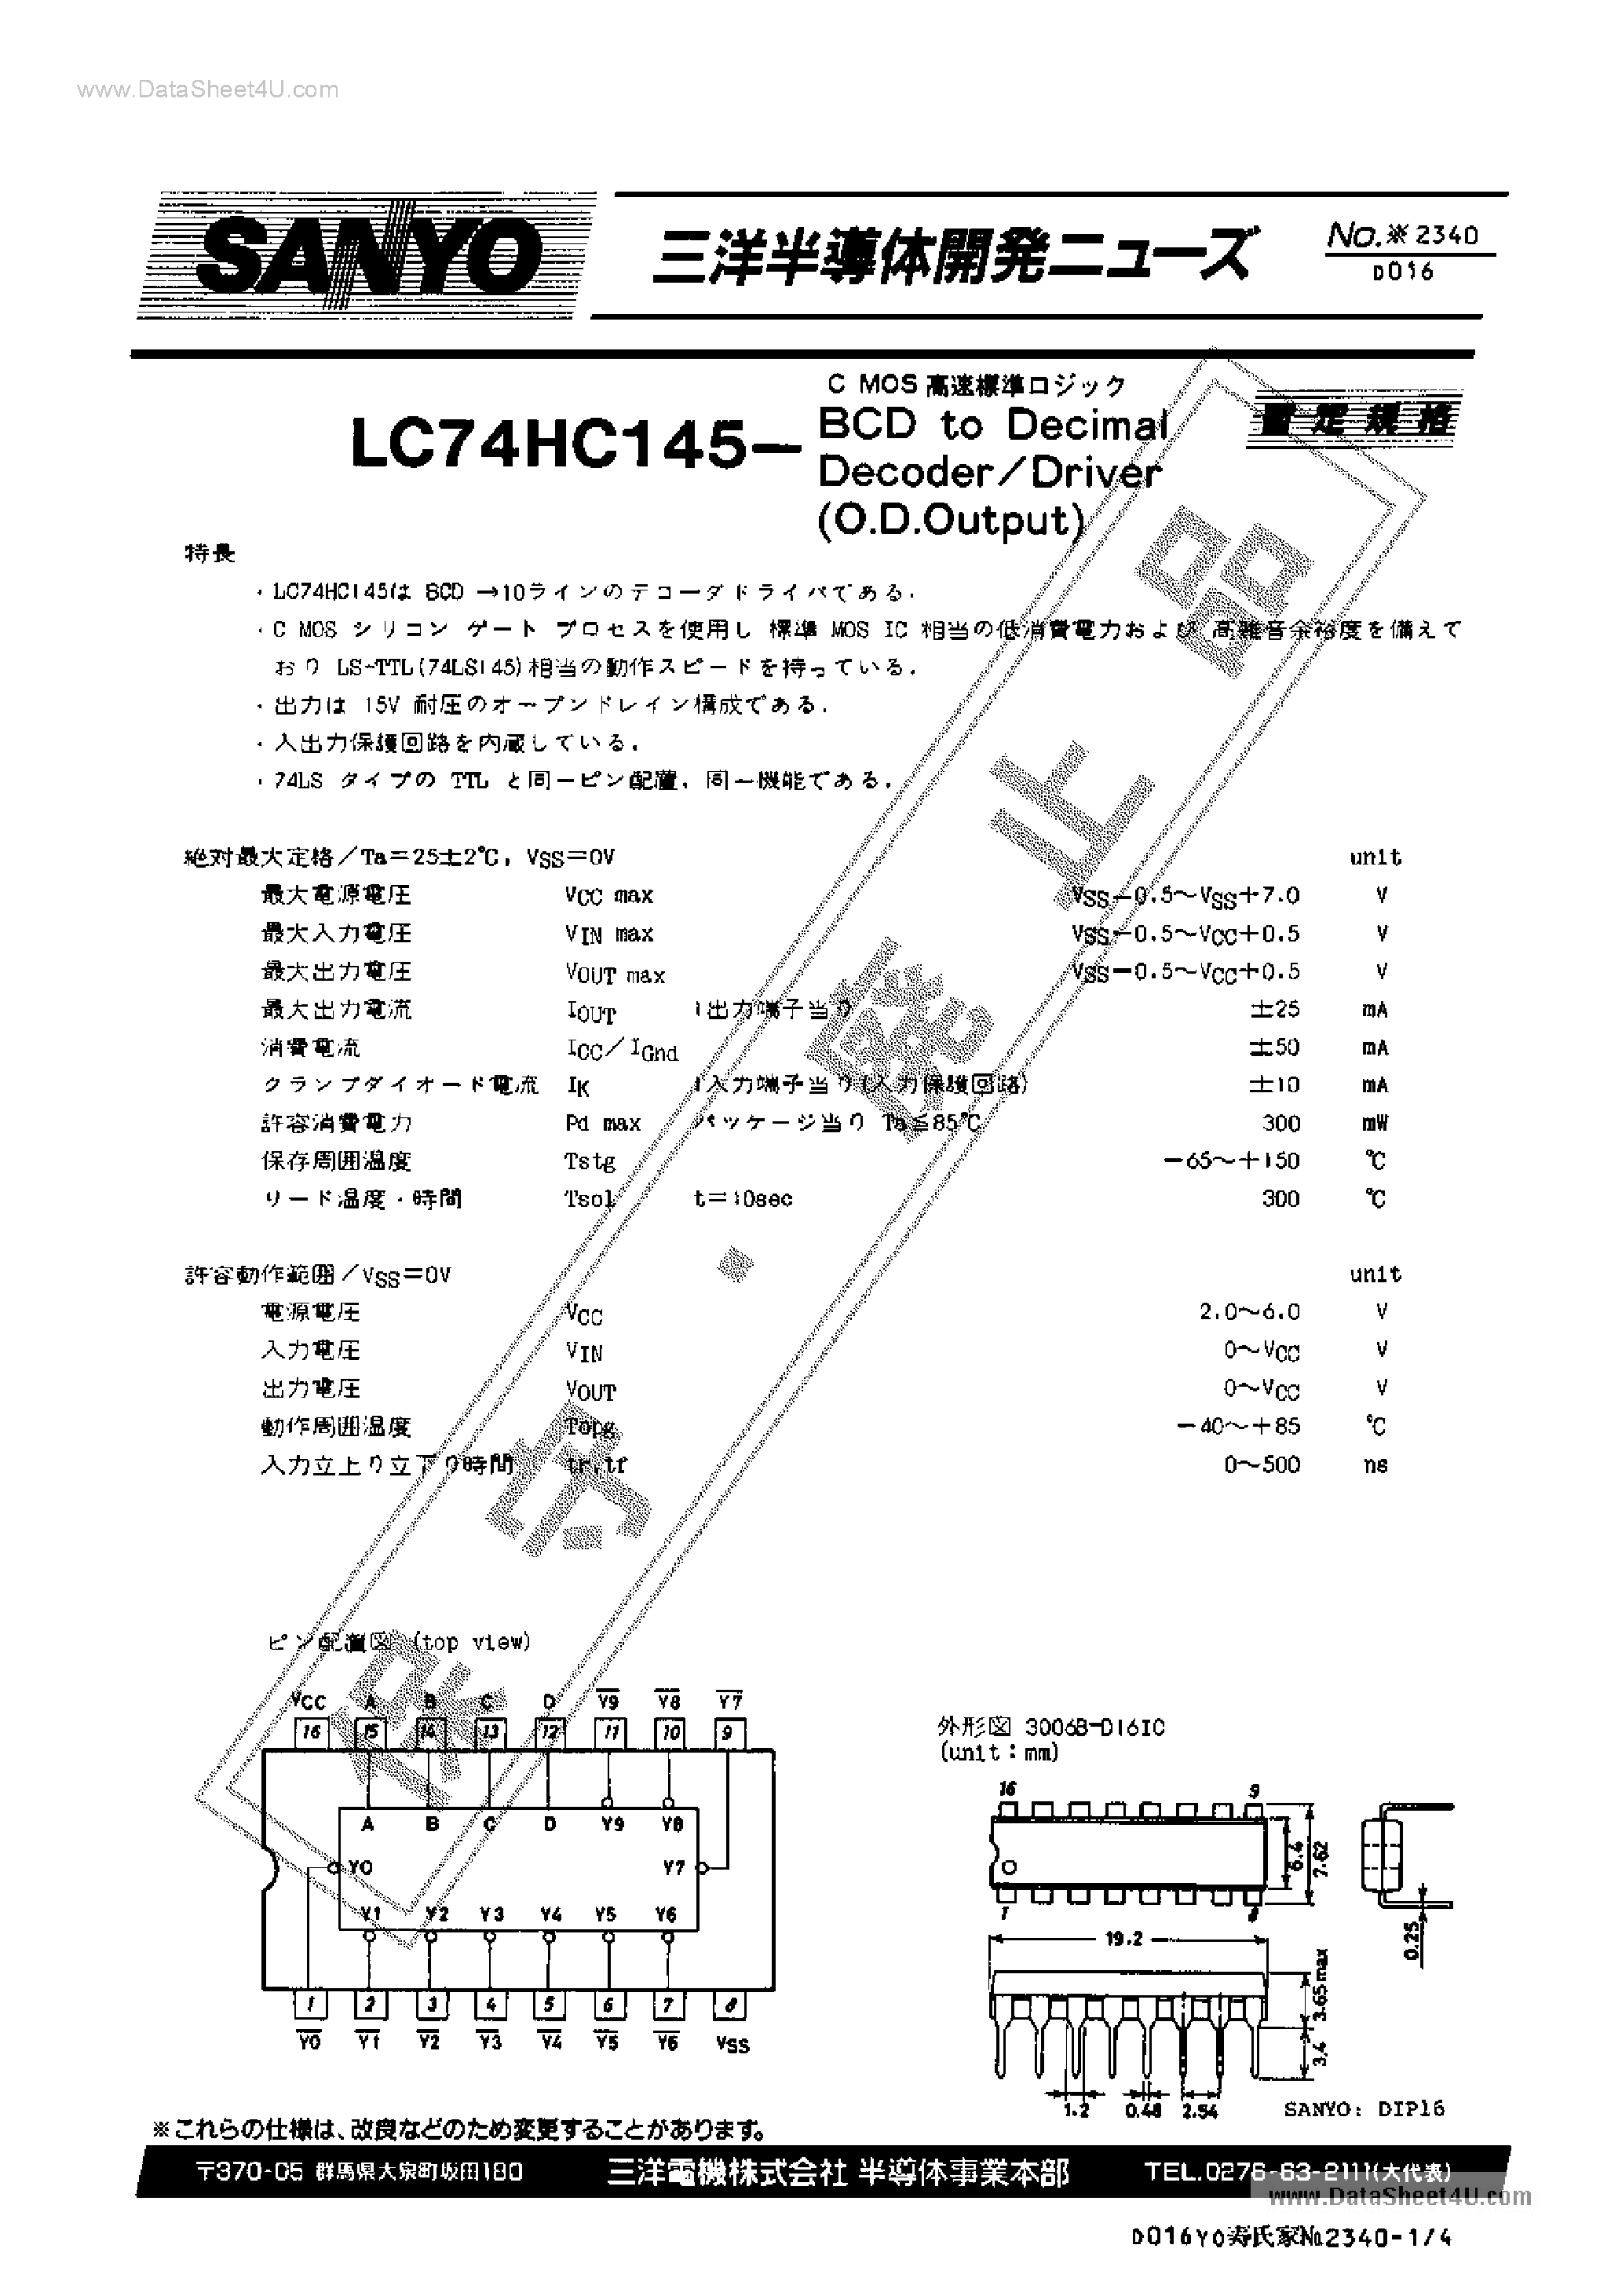 Datasheet 74HC145 - Search -----> LC74HC145 page 1